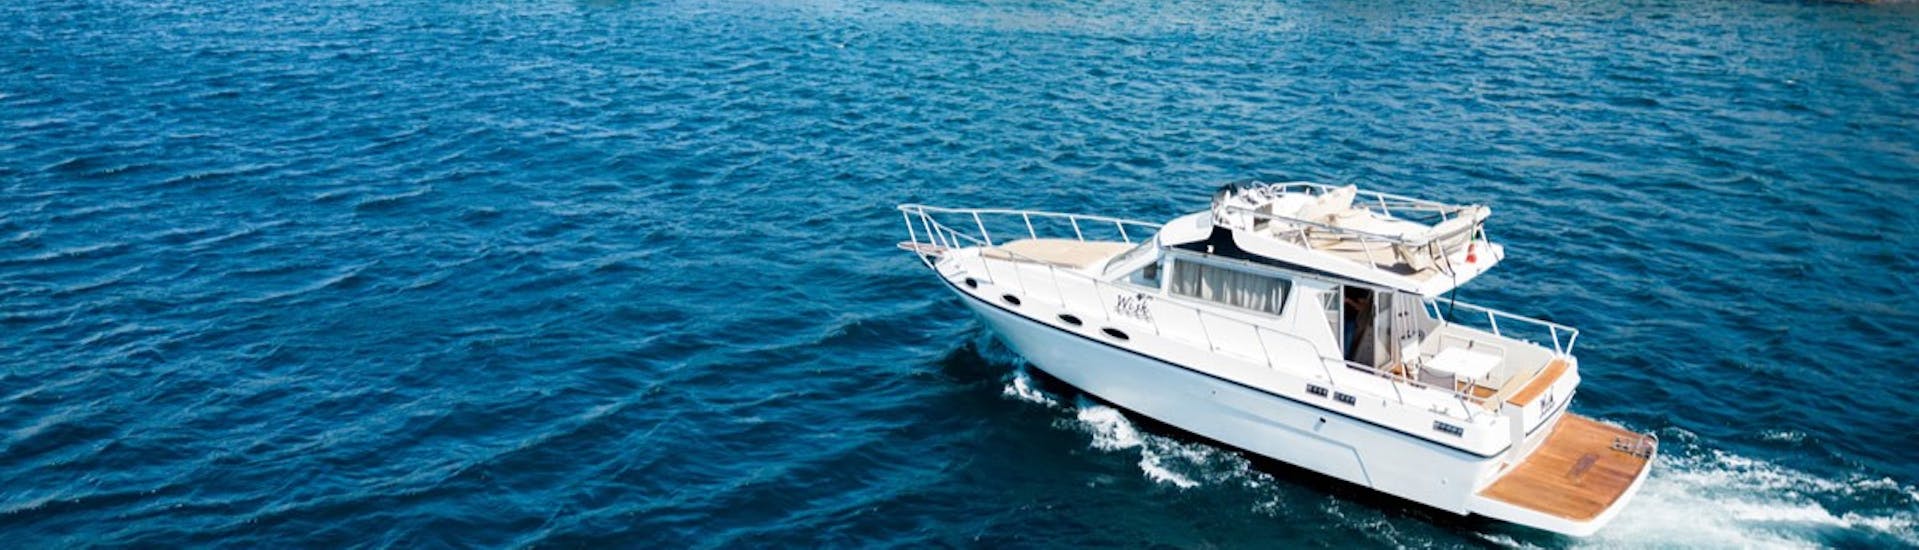 Imagen del barco Wish utilizado durante el paseo privado en Barco desde Catania a las Islas Cíclopes con aperitivo con Wish Boat Rent Catania.